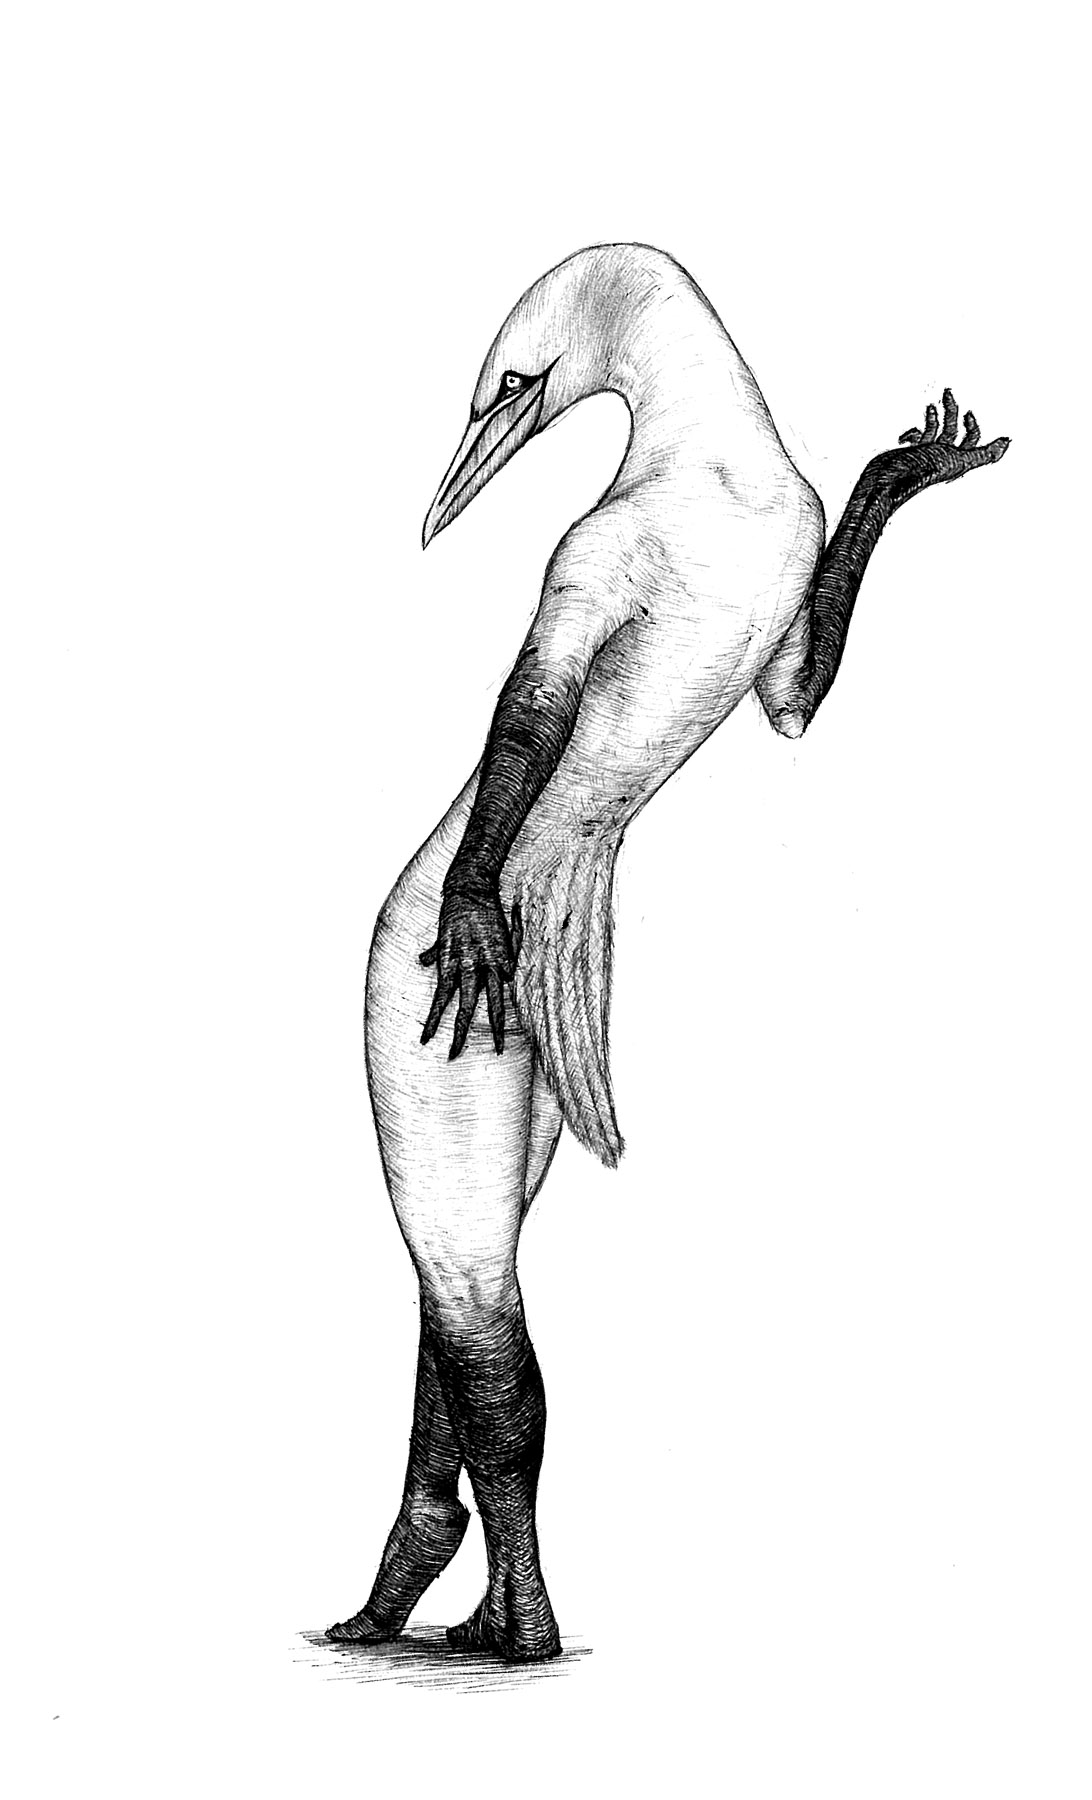 Obrázek A: Ptakolidé I